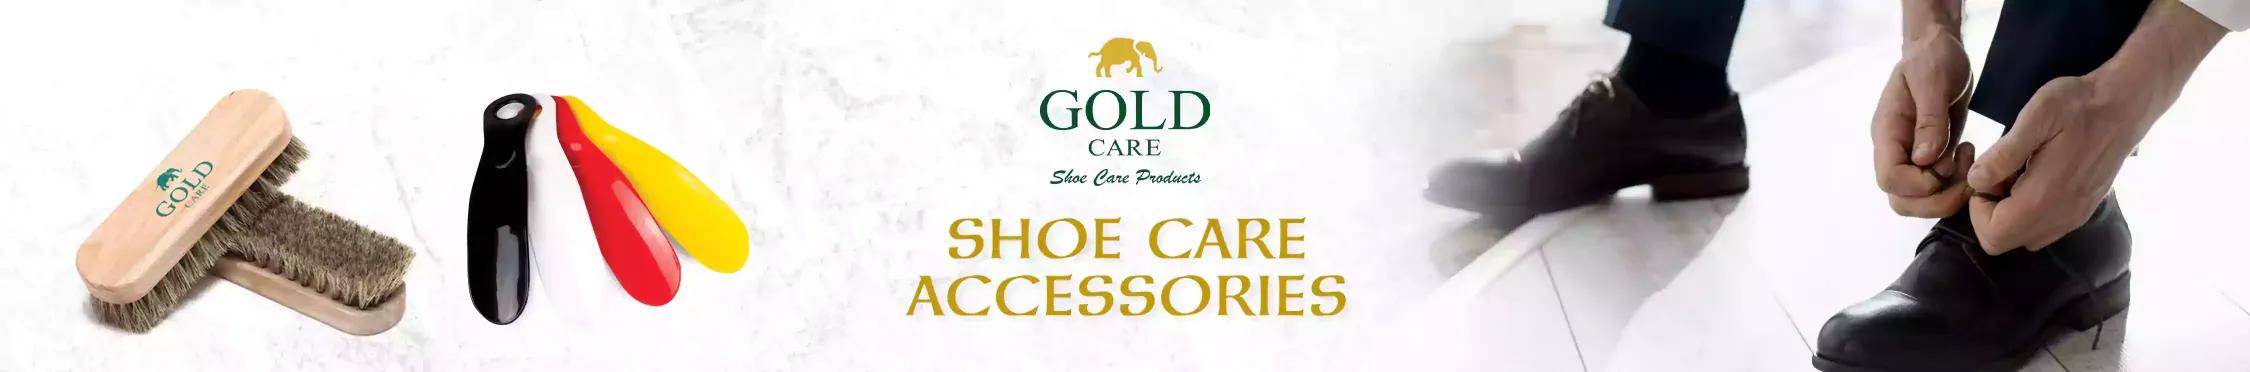 1693716218503_shoe_care_accessories.webp